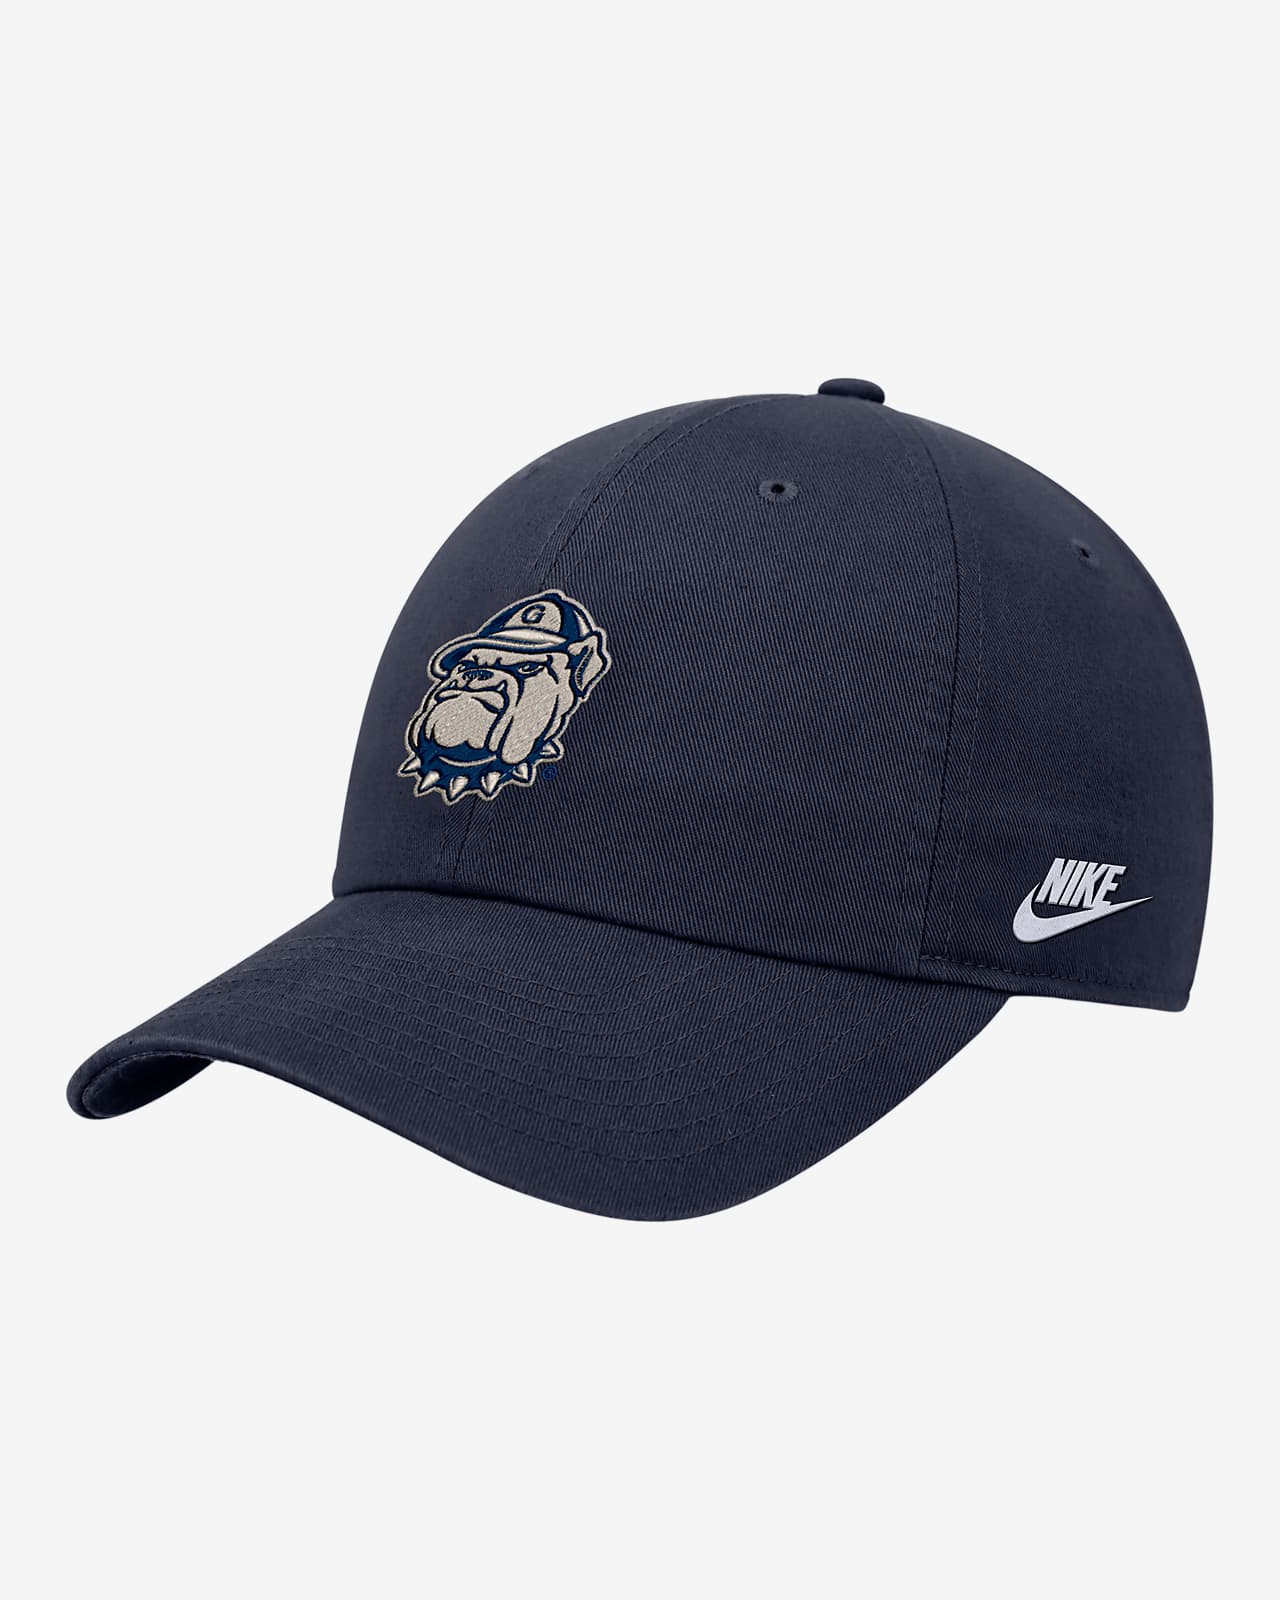 Georgetown Nike College Cap